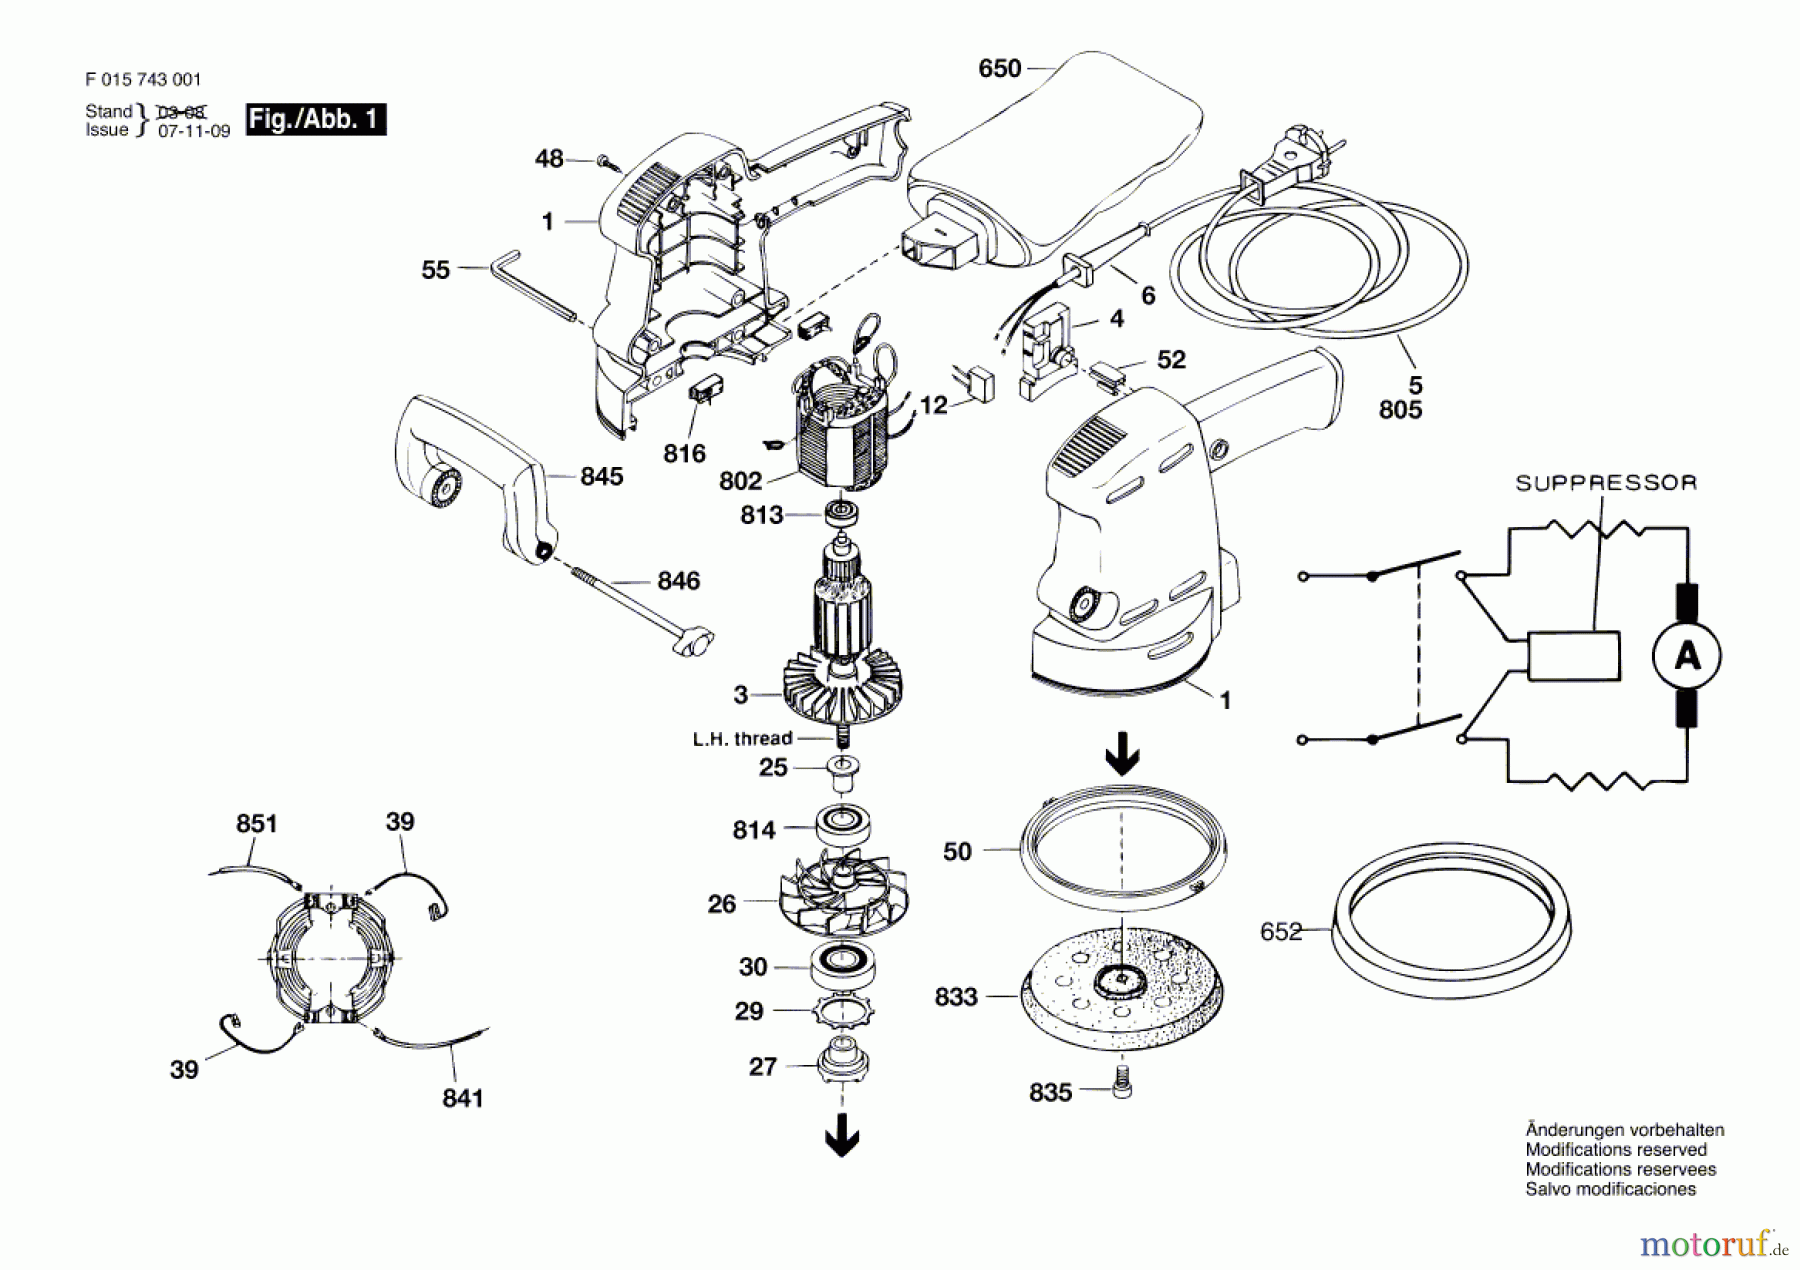  Bosch Werkzeug Exzenterschleifer 7430 H1 Seite 1